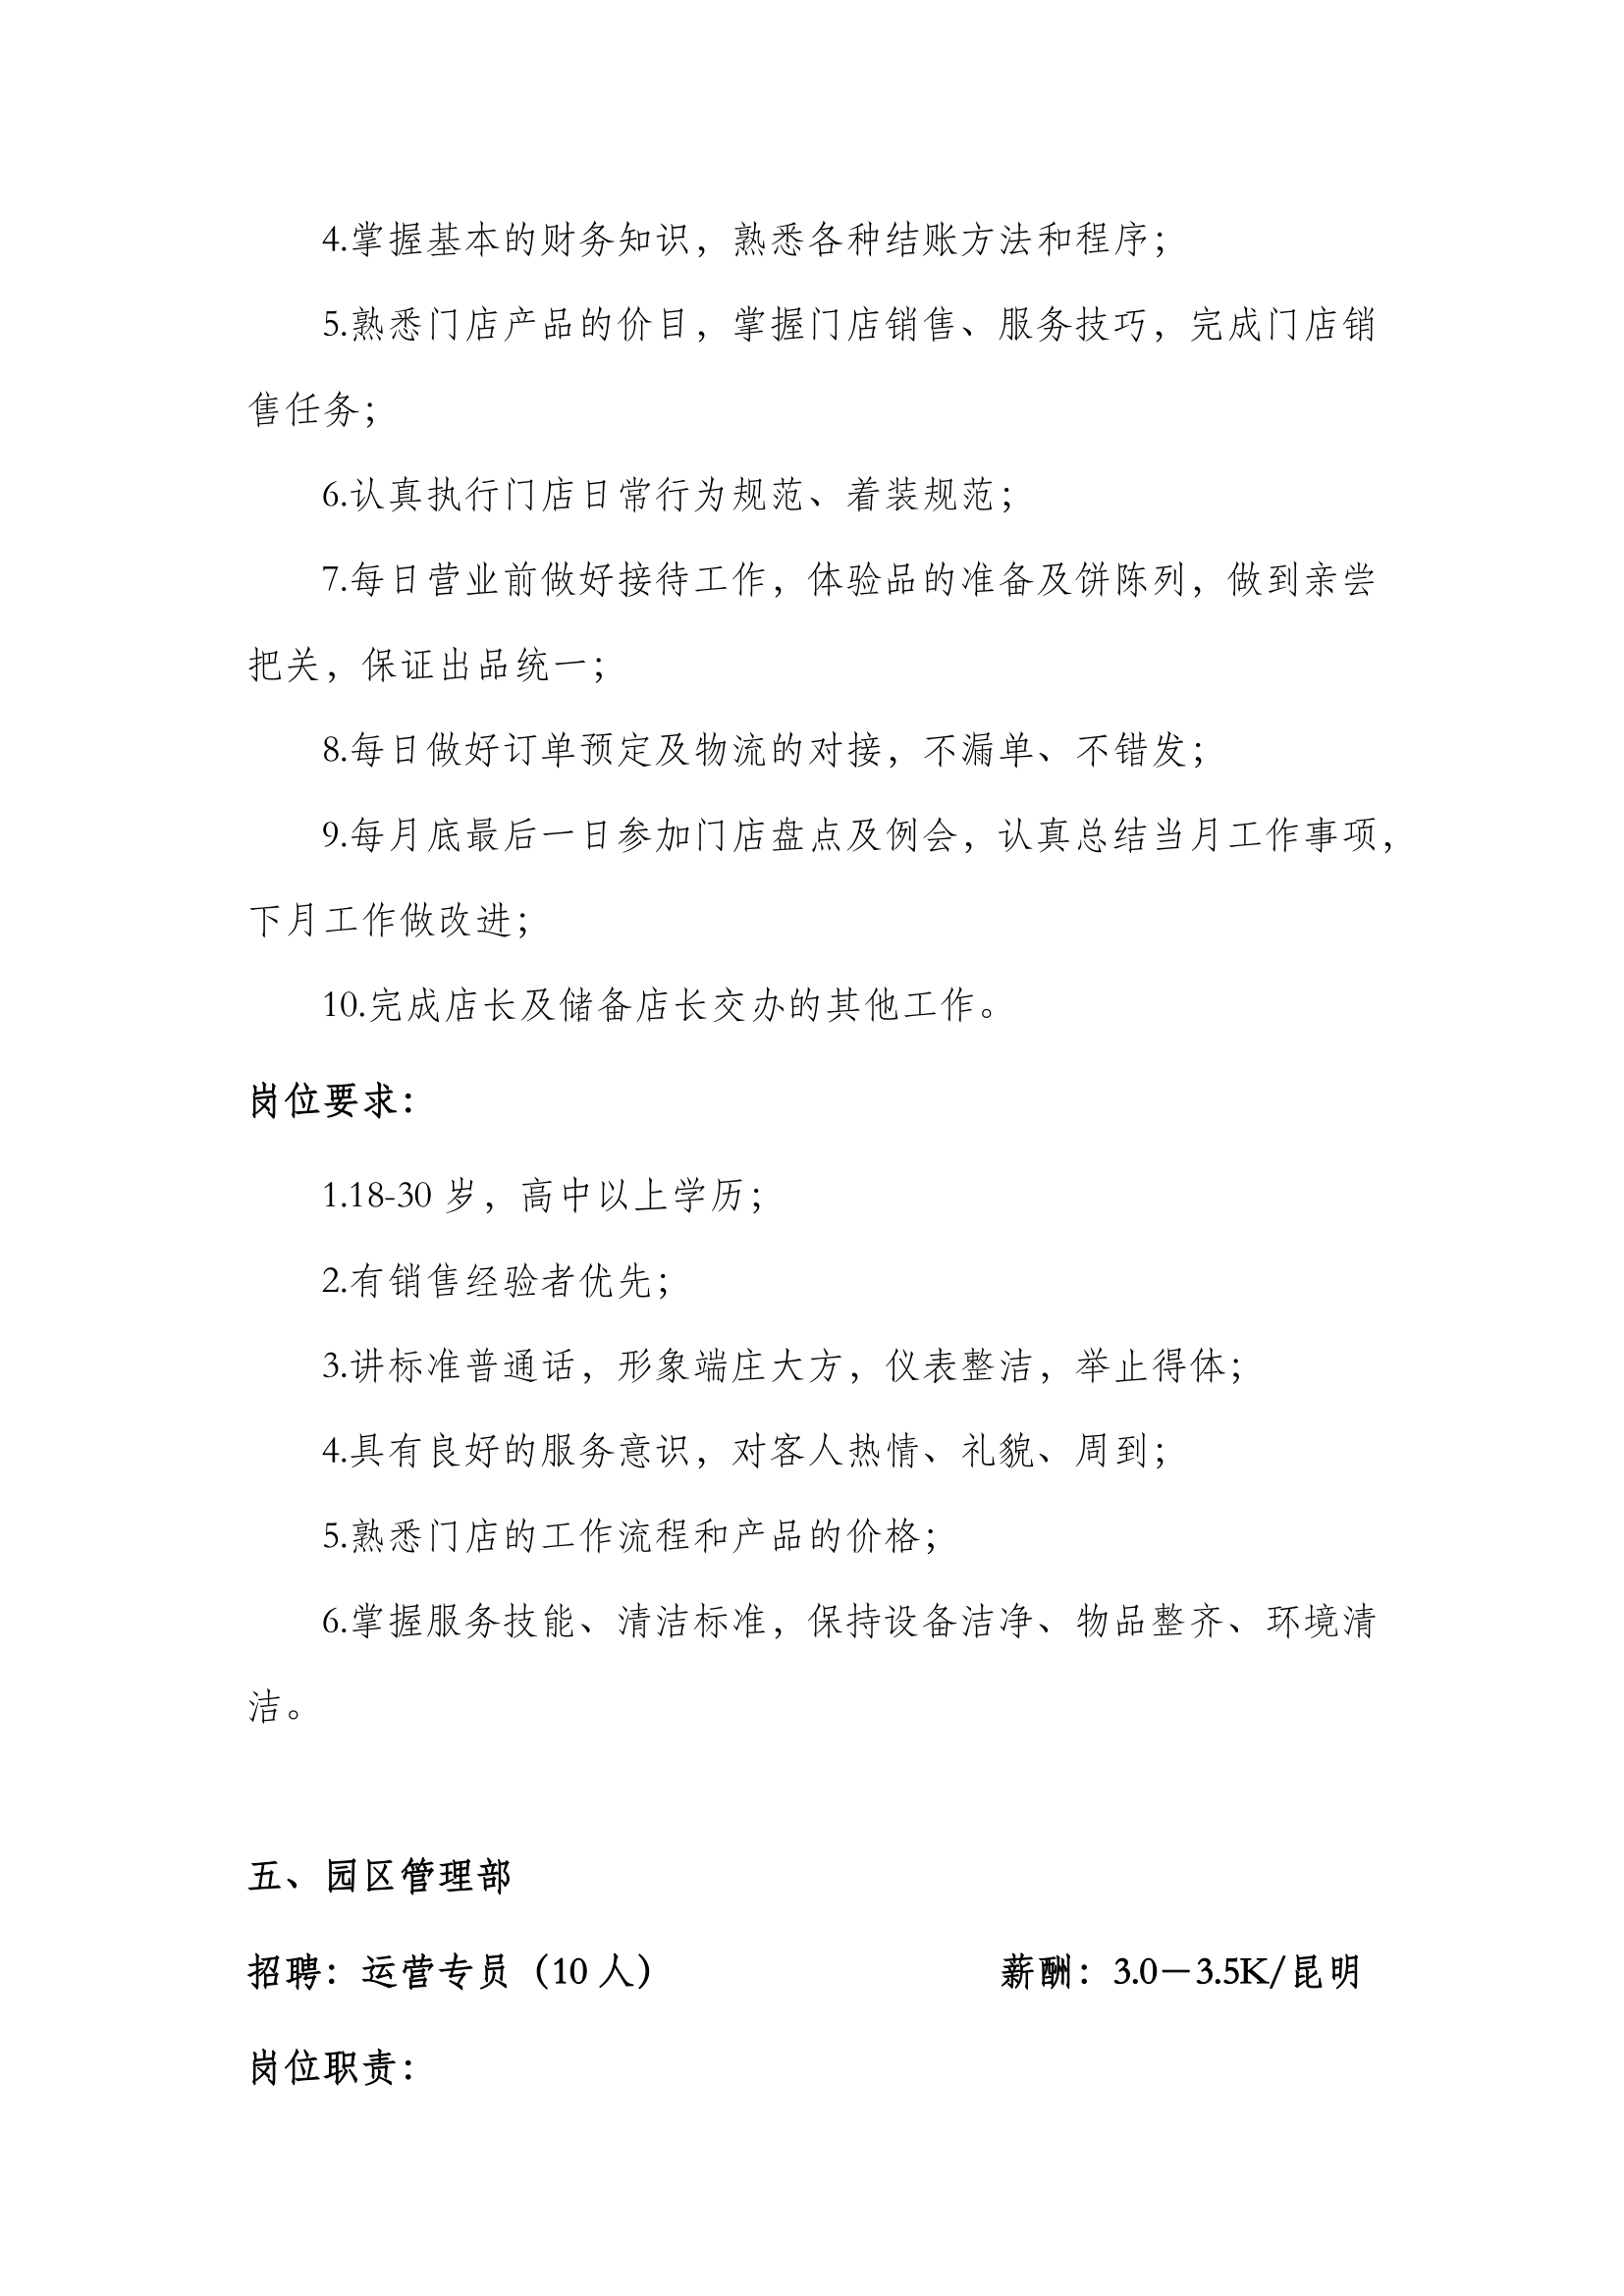 2021年4月花之城招聘简章(2)-4.png